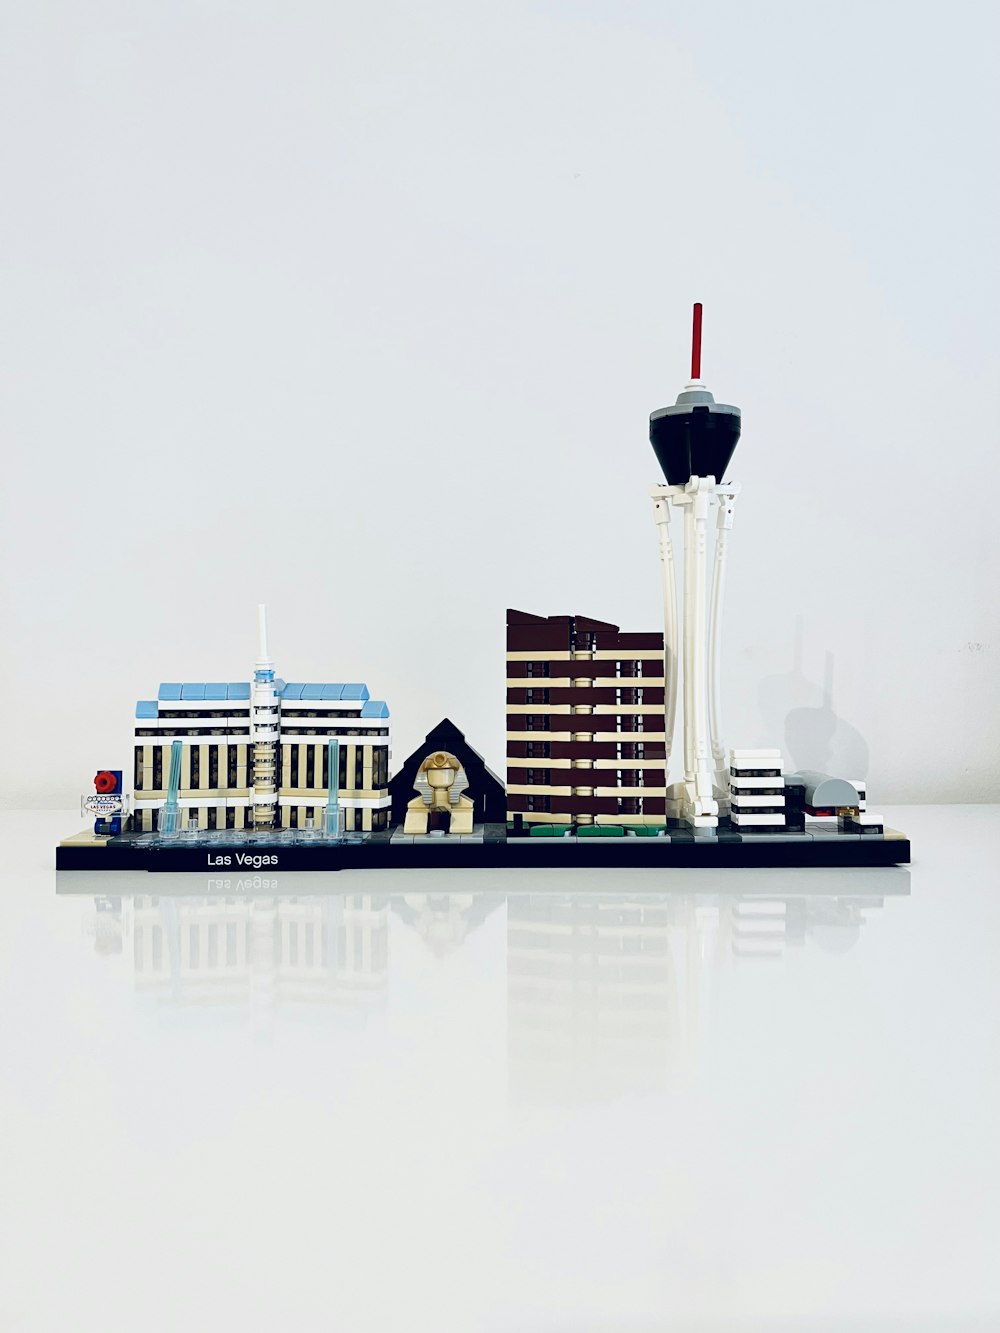 給水塔を背景にした建物の模型